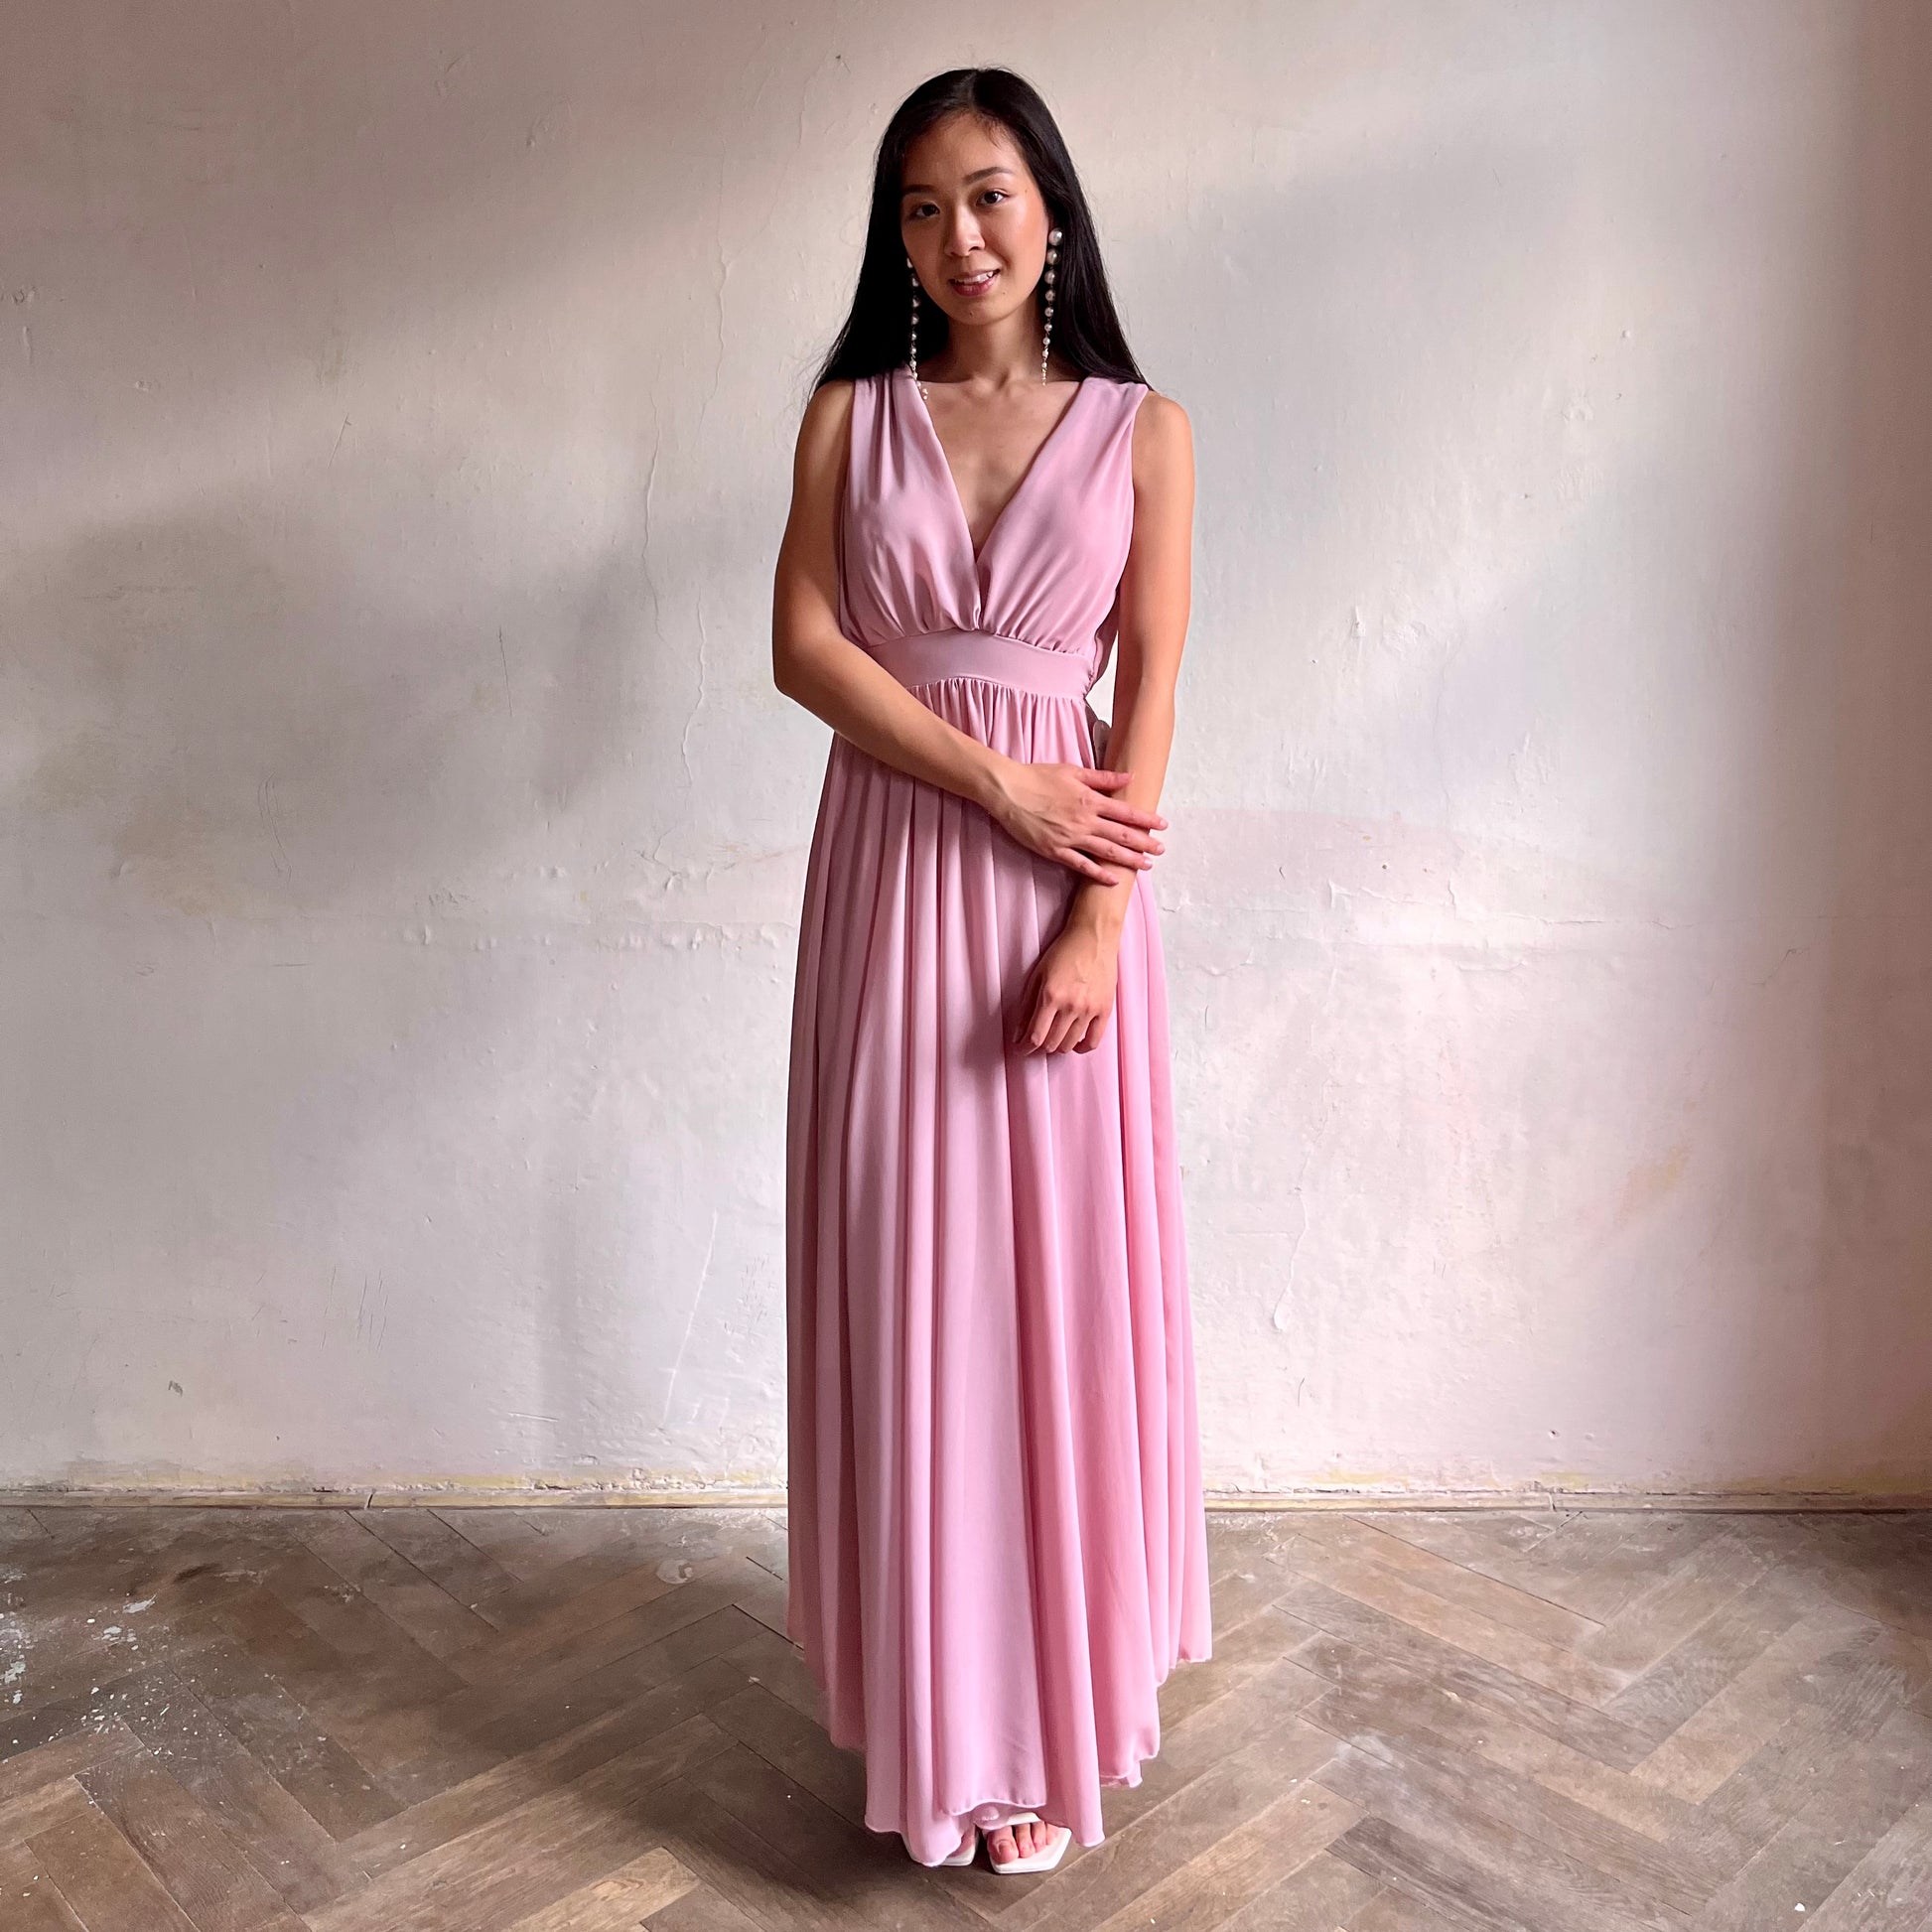 Modelka asijského původu pózující zepředu oblečená ve světle růžových společenských šatech